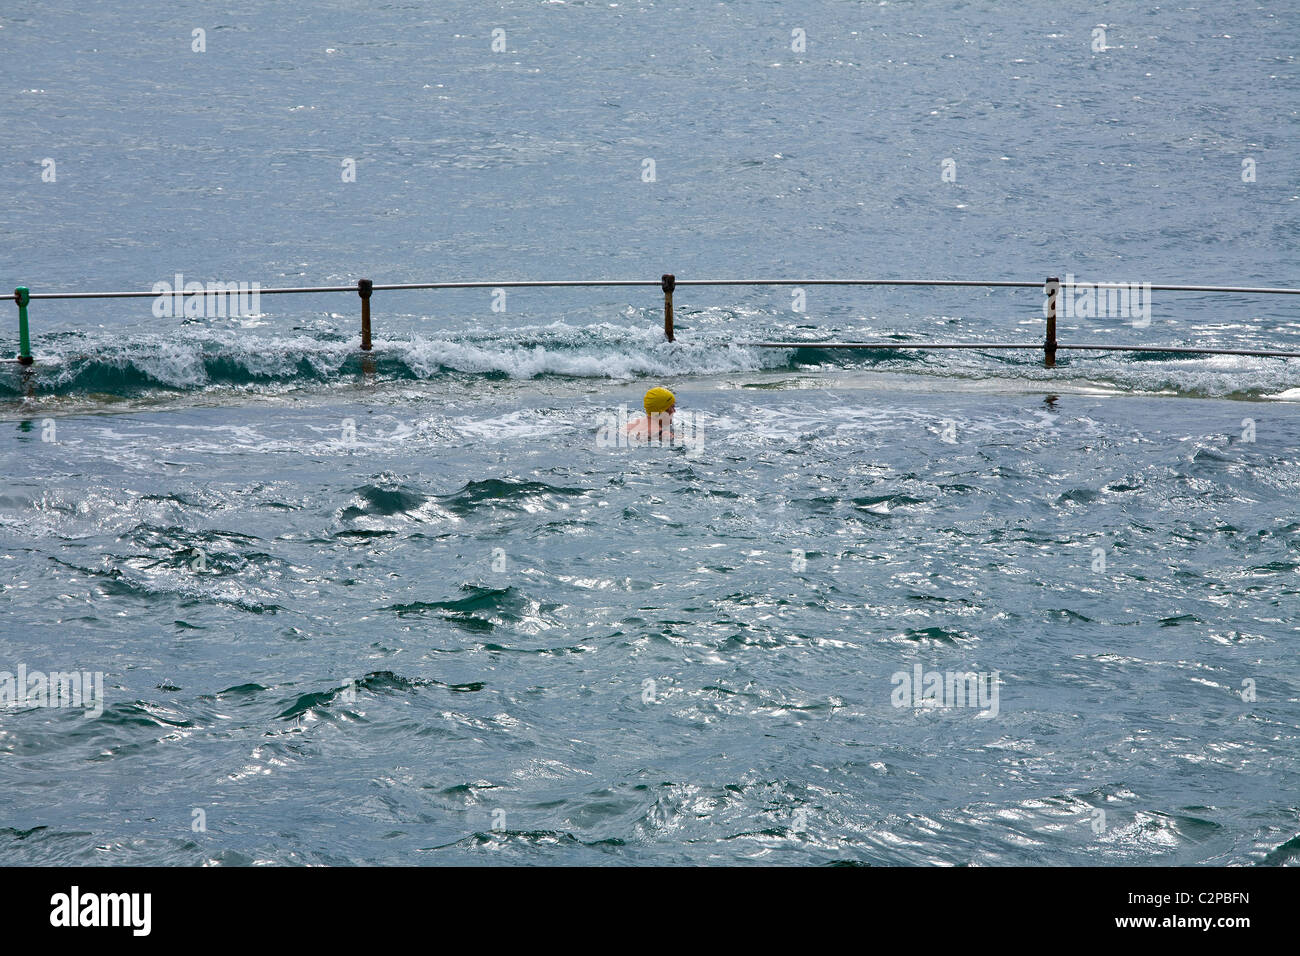 Nuotatore a La valette pool di balneazione, havelet Bay, a st peter port guernsey, Regno Unito Foto Stock